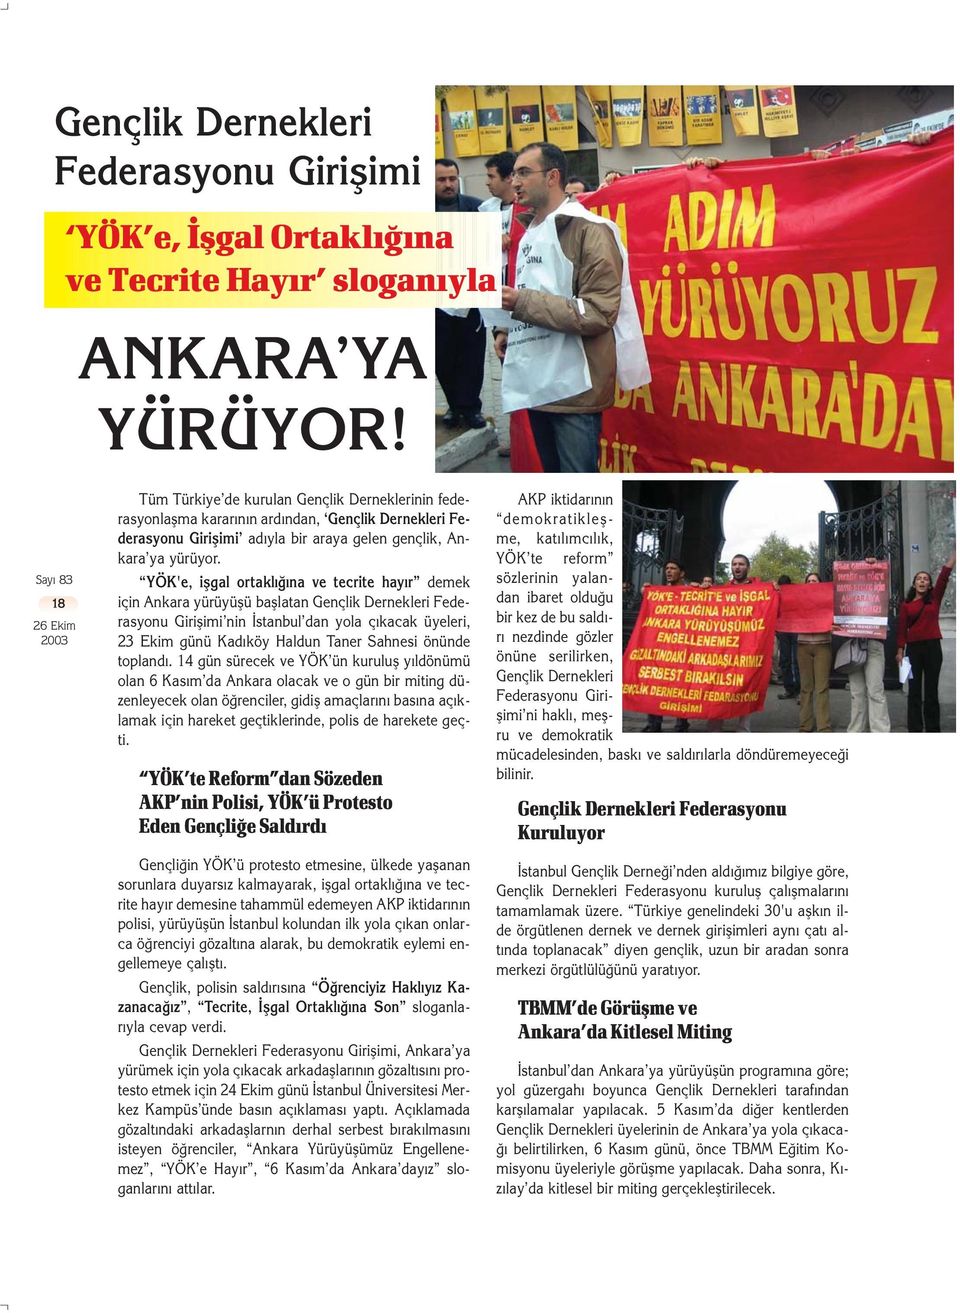 YÖK'e, iflgal ortaklı ına ve tecrite hayır demek için Ankara yürüyüflü bafllatan Gençlik Dernekleri Federasyonu Giriflimi nin stanbul dan yola ç kacak üyeleri, 23 Ekim günü Kadıköy Haldun Taner